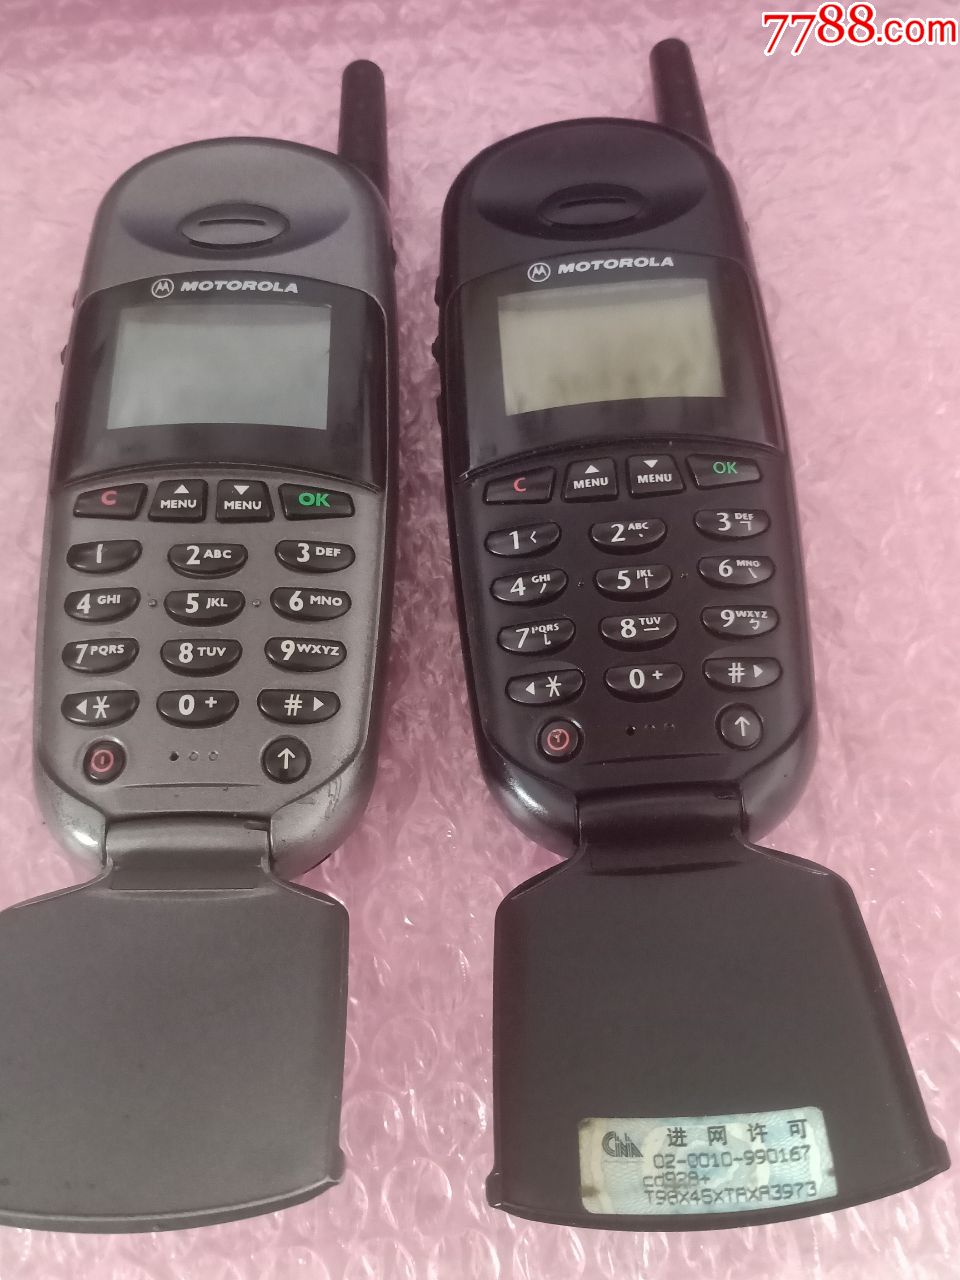 两台经典收藏motorola摩托罗拉cd928 翻盖老式手机